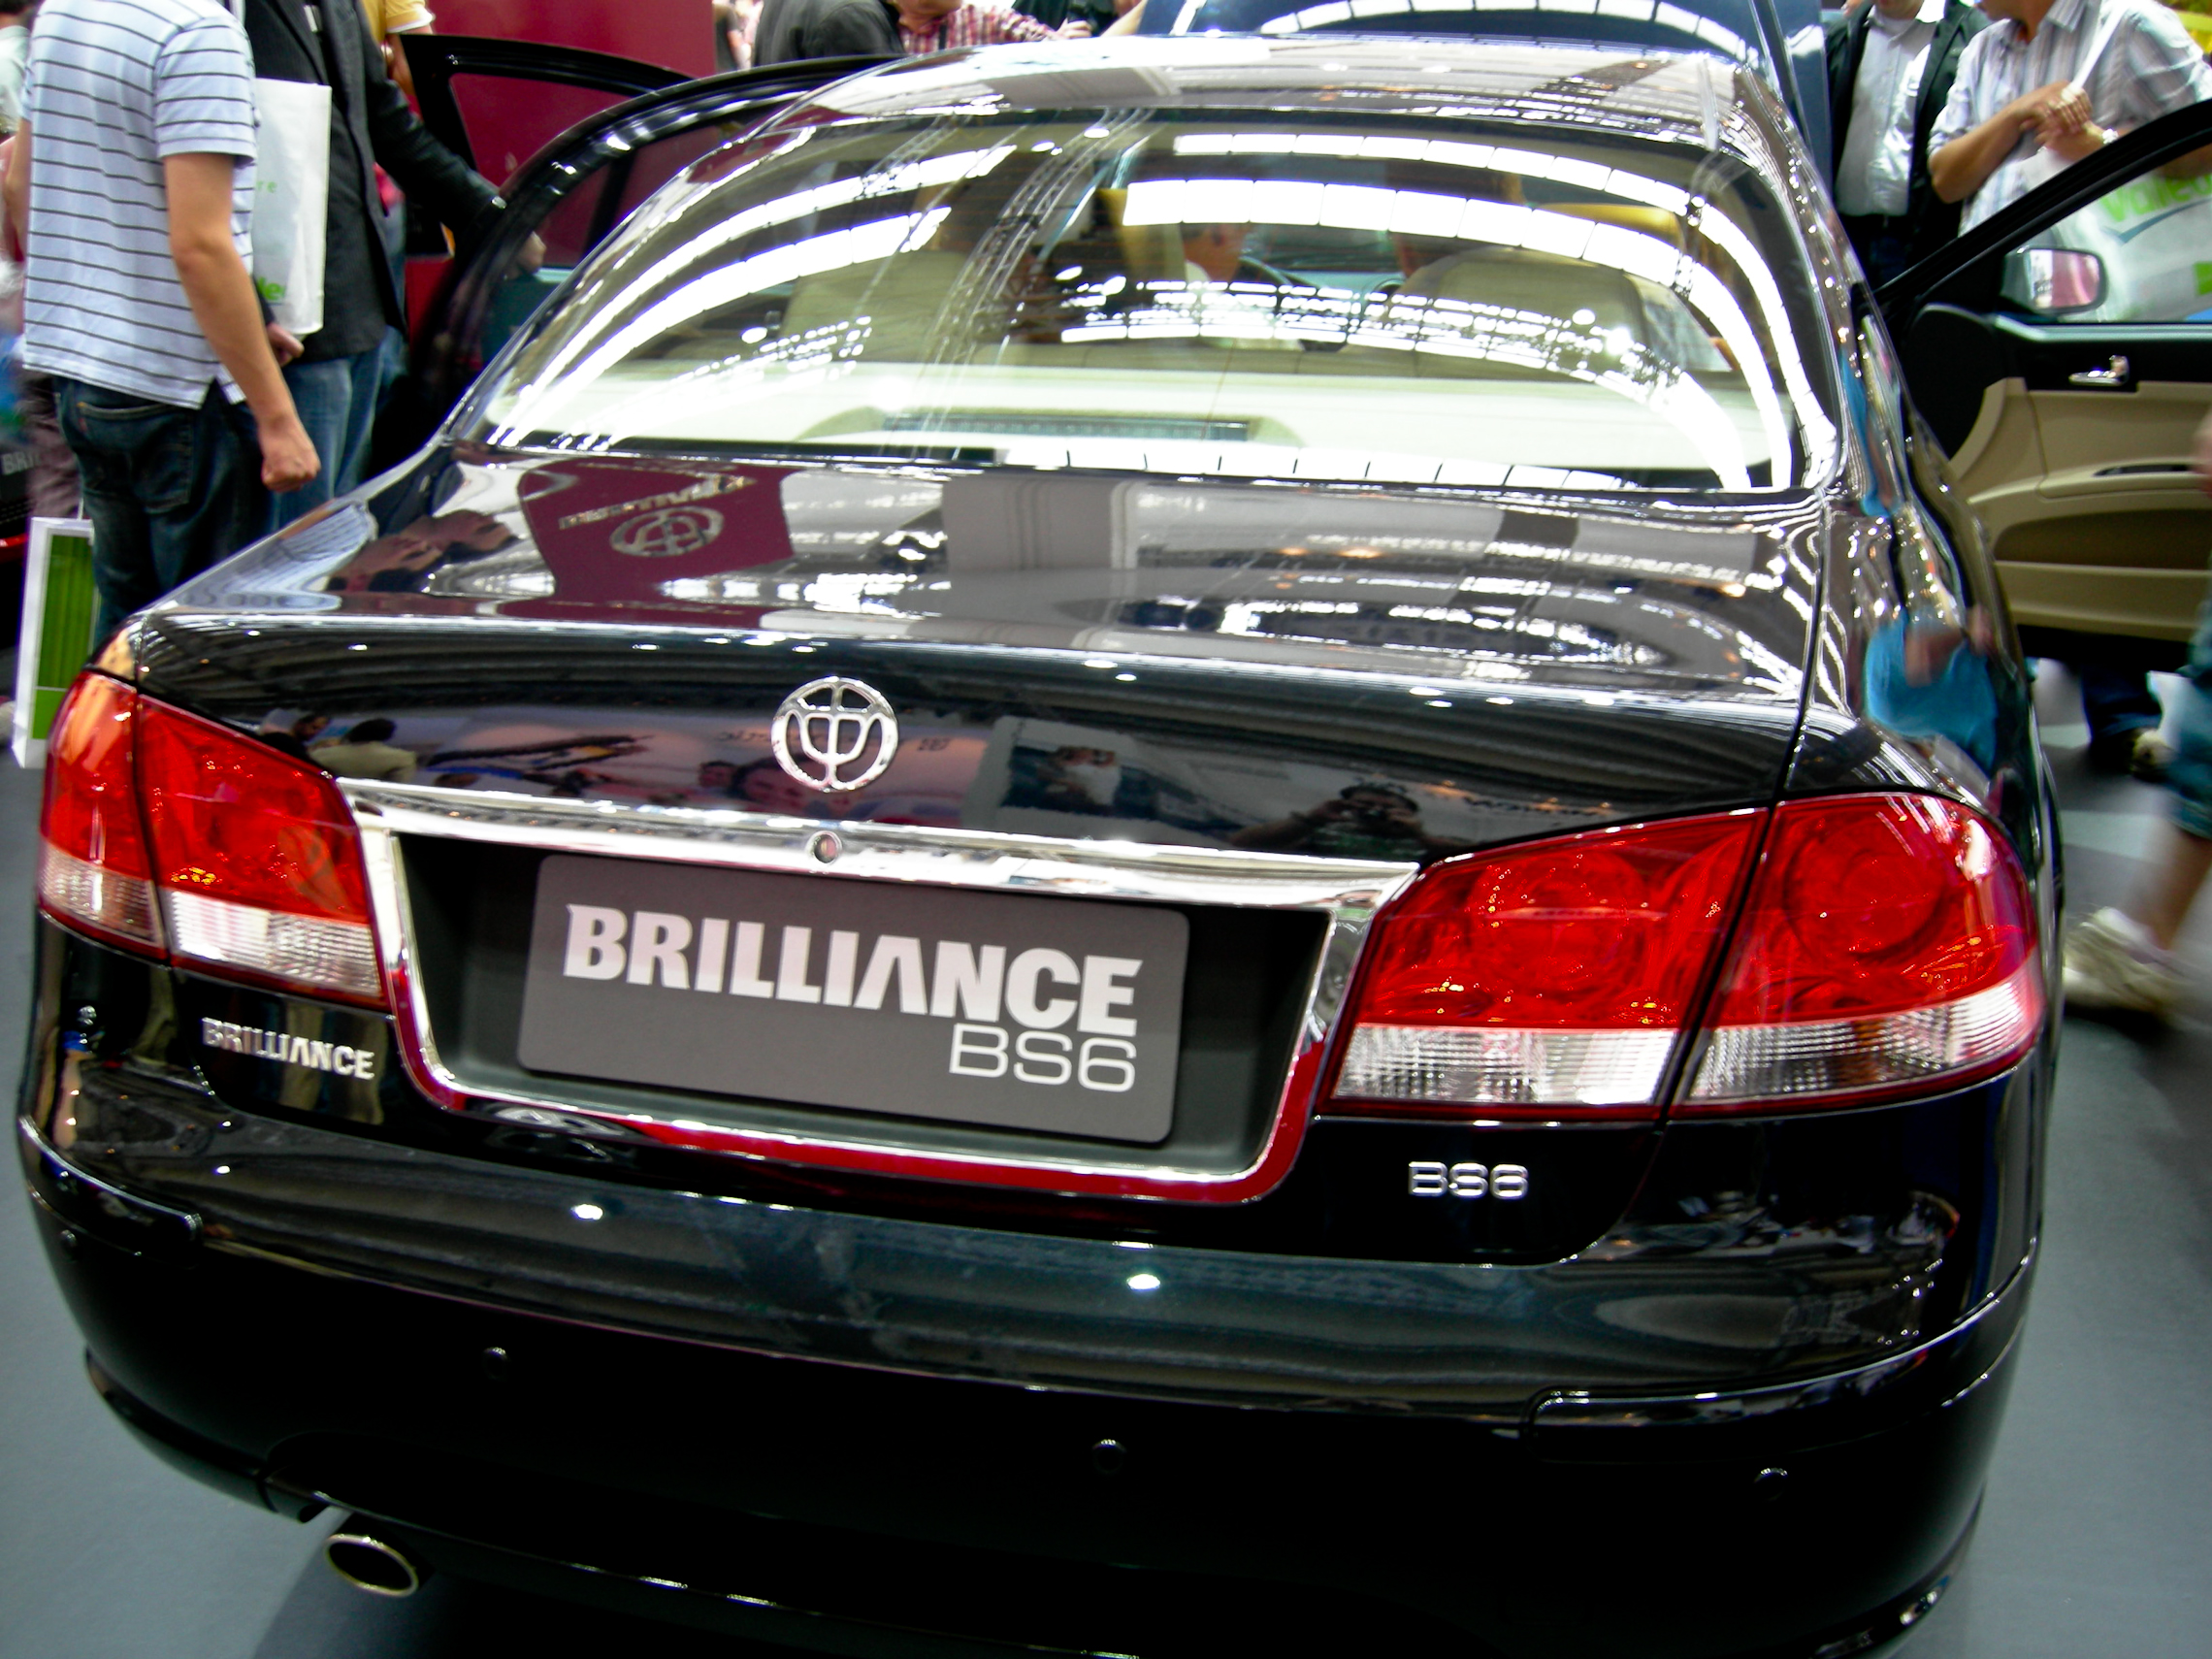 IAA 2007 - Brilliance BS6 | Flickr - Photo Sharing!